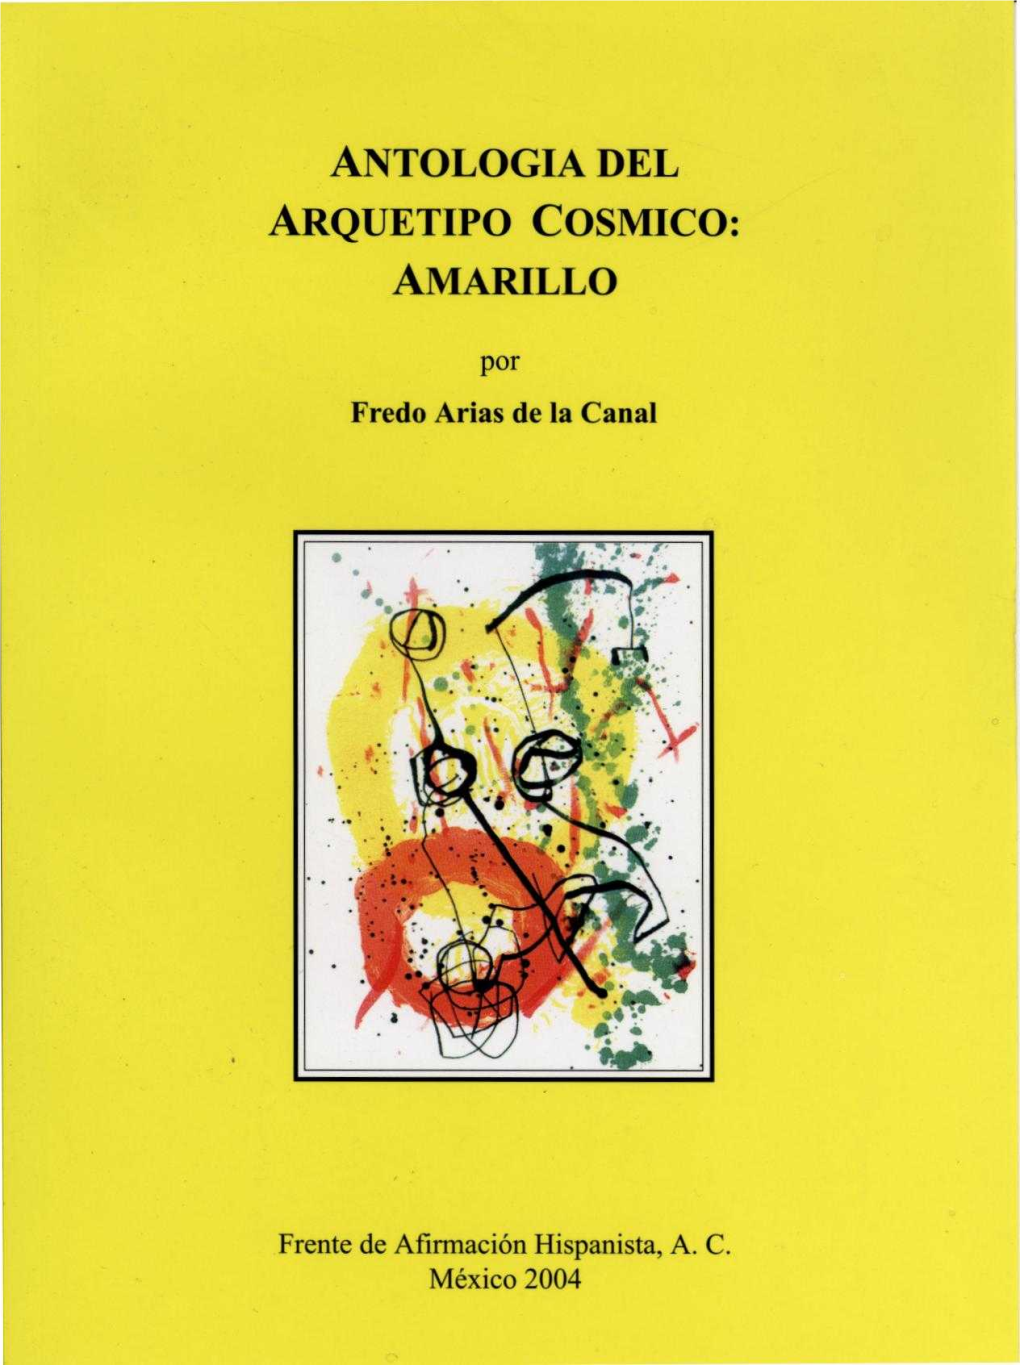 Antologia Del Arquetipo Cosmico: Amarillo